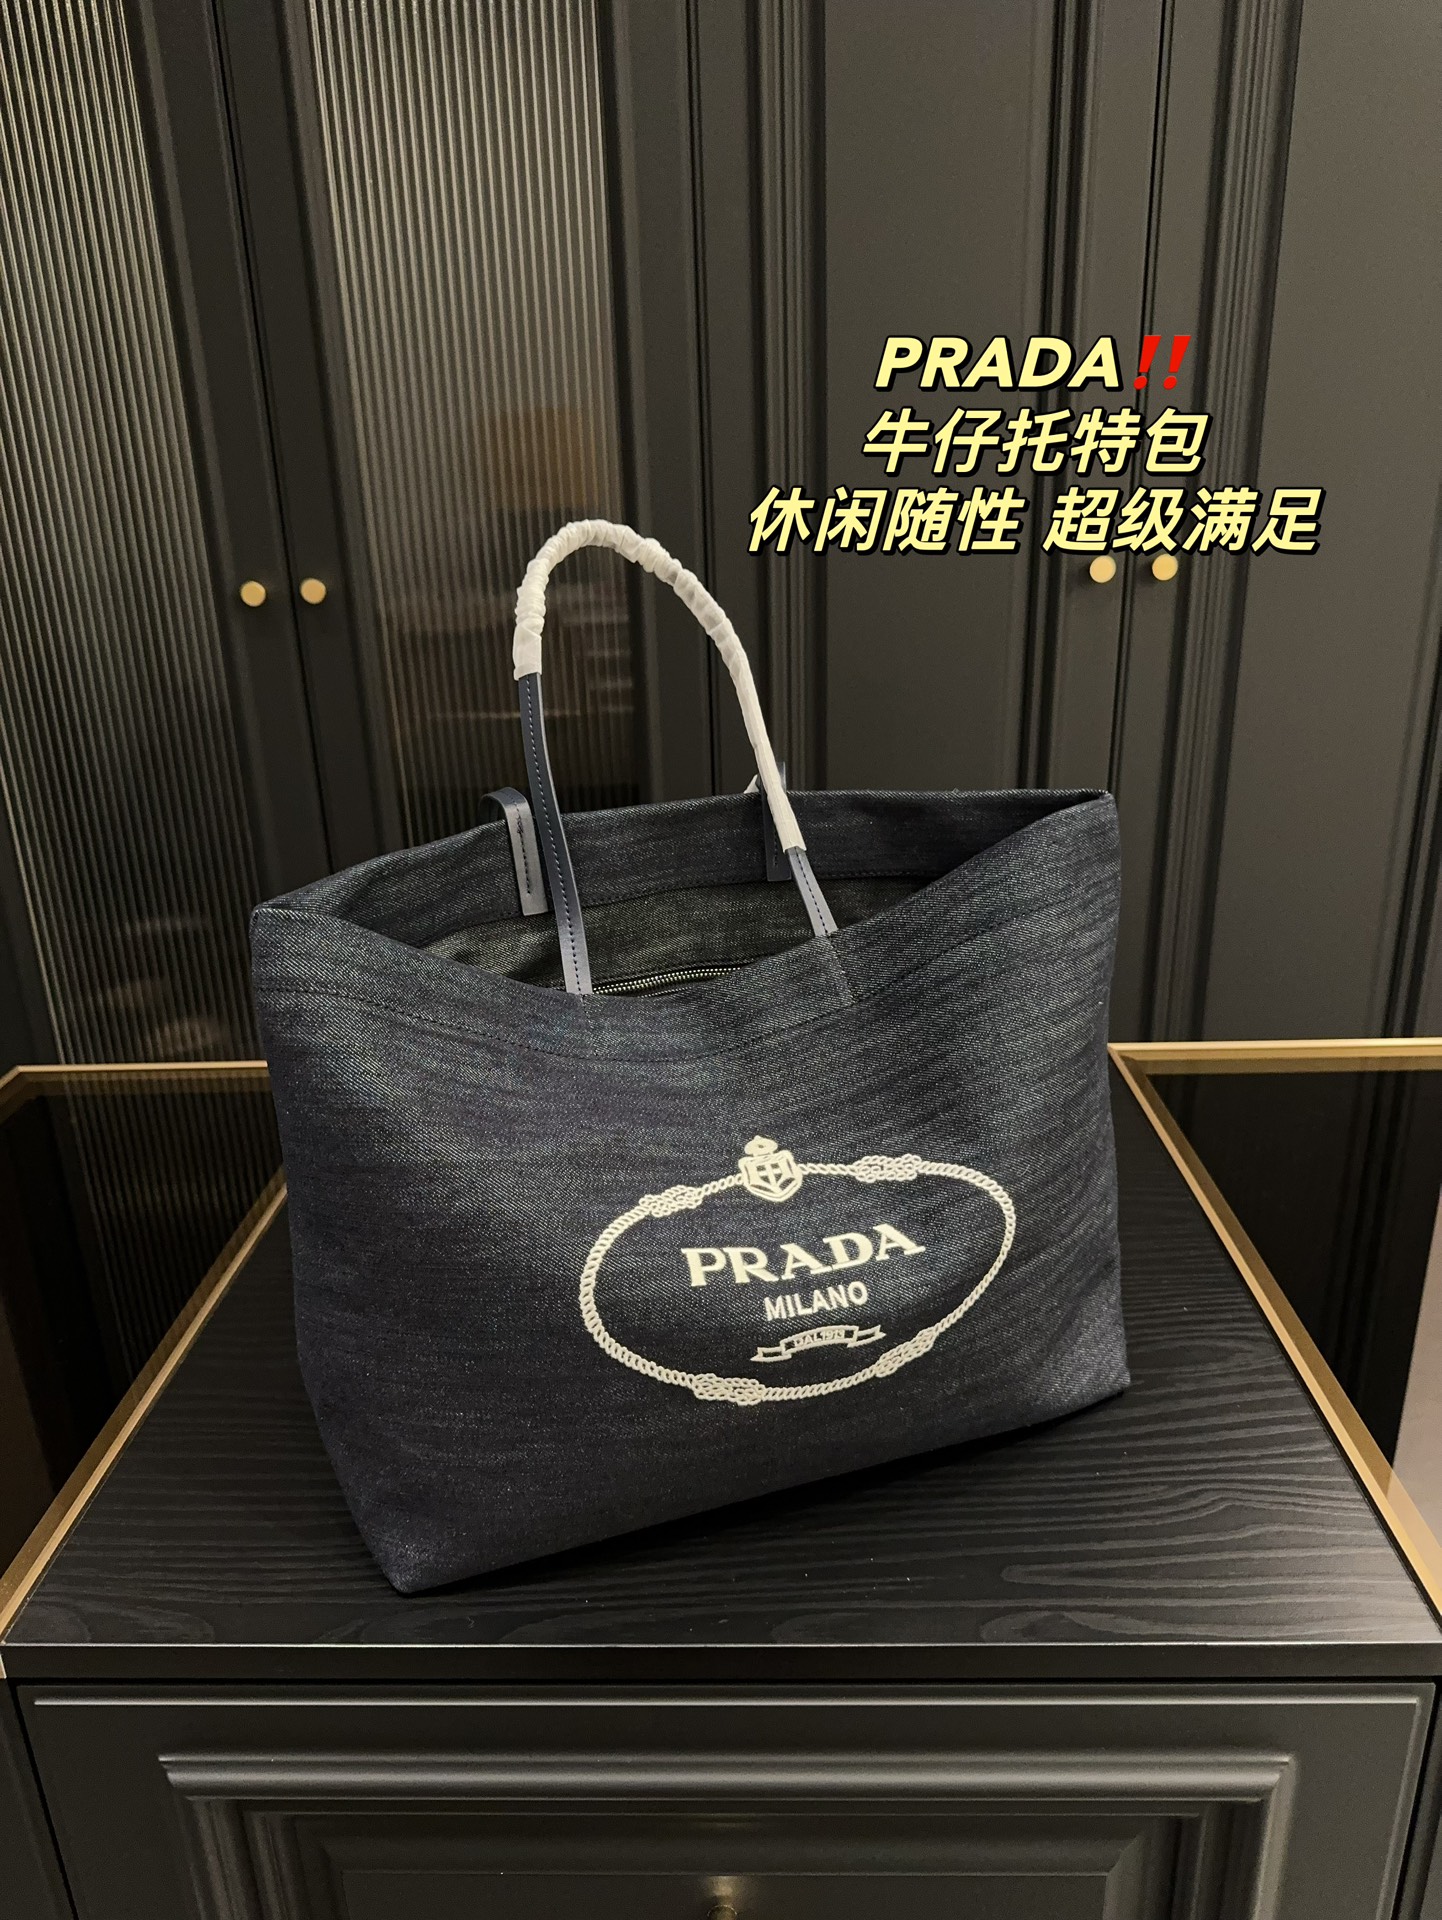 Pra new arrival tote bag size : 36* 29 cm